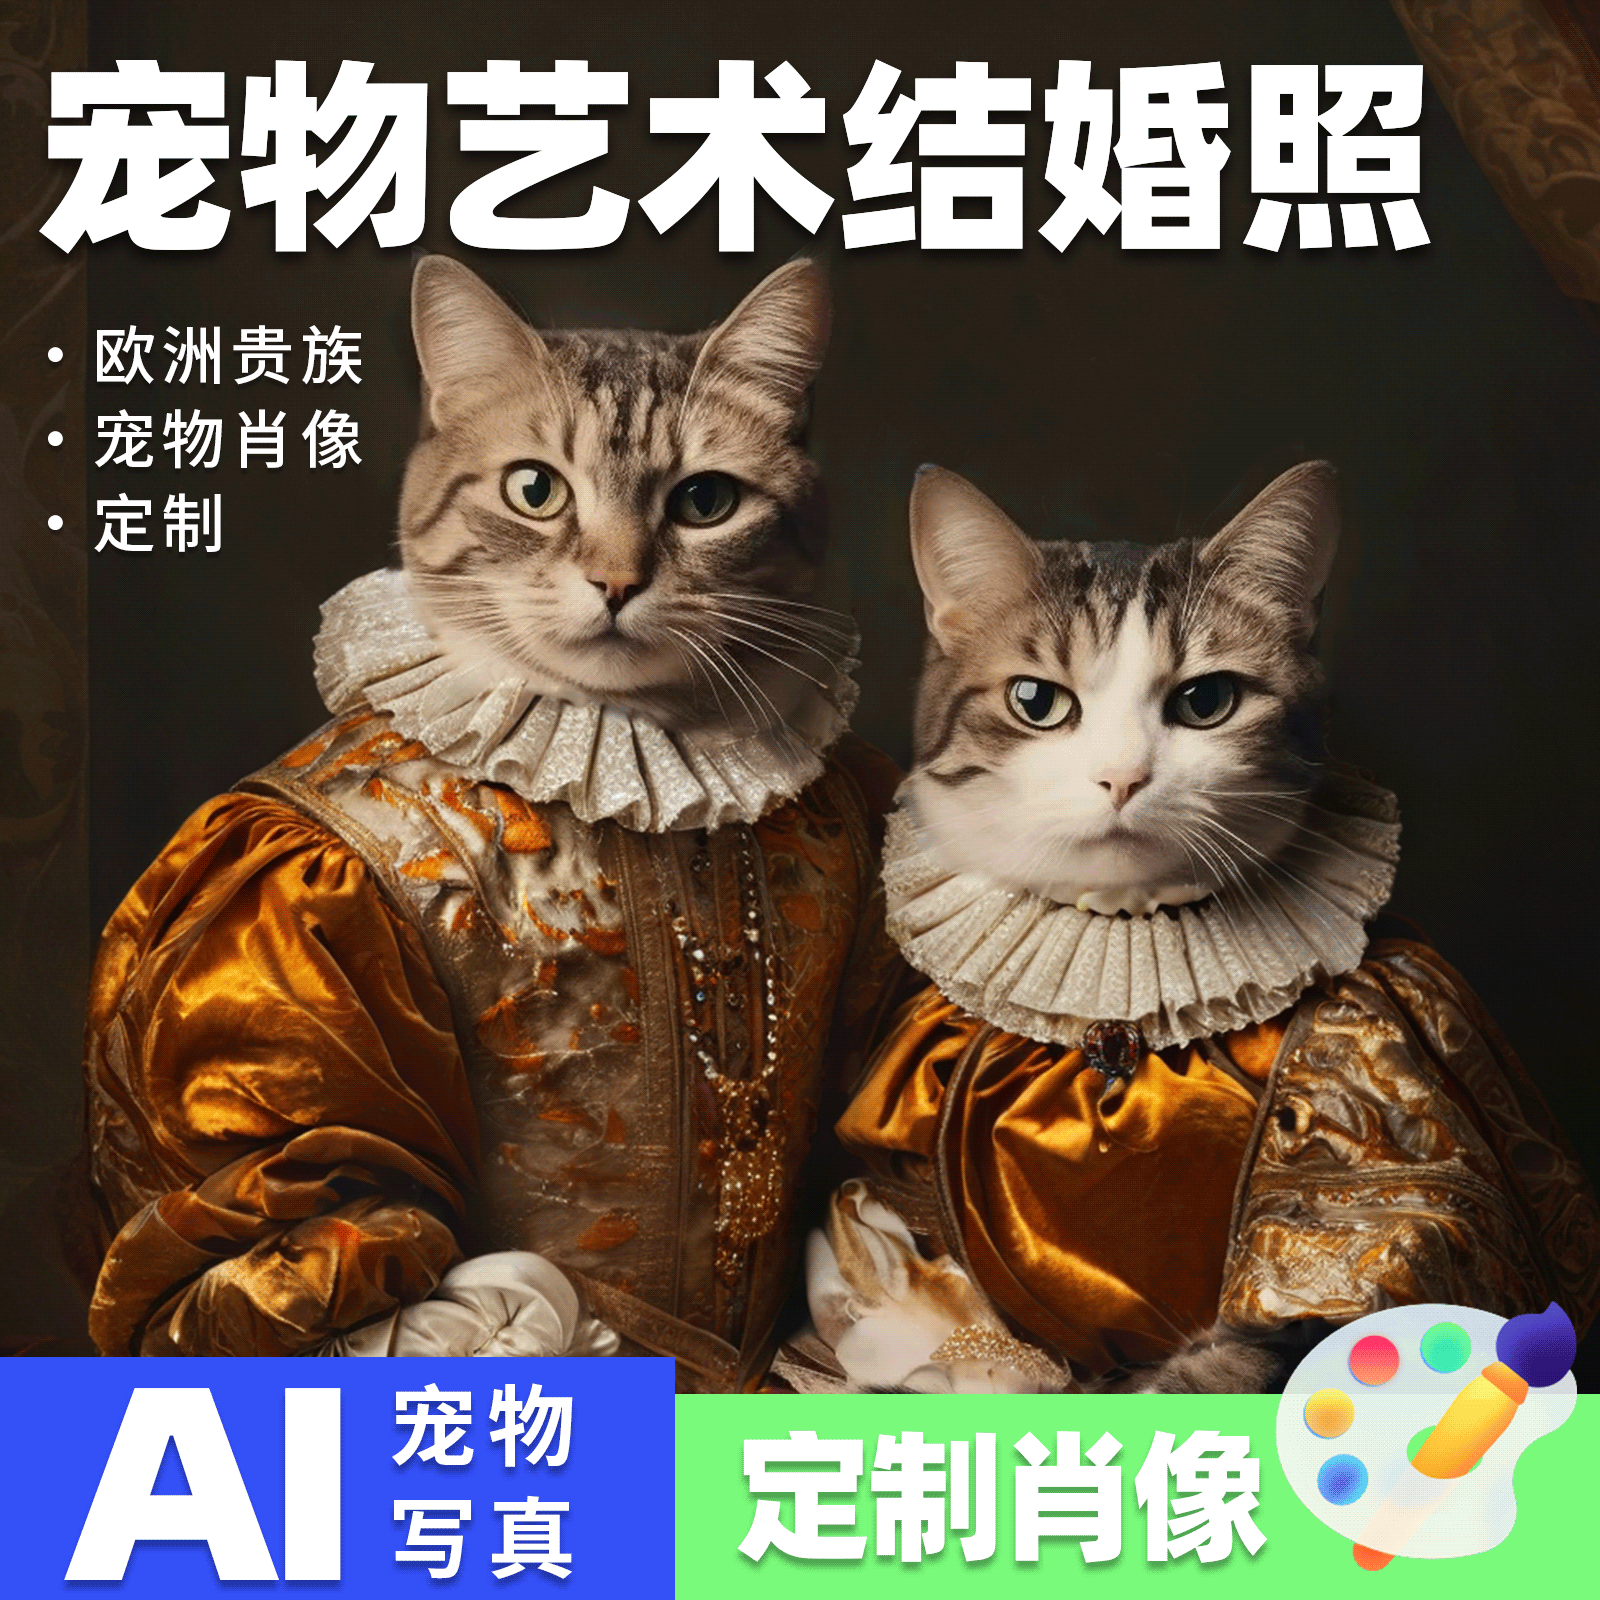 AI宠物写真AI绘画萌宠头像猫狗中世纪风格宠物摄影礼物艺术照精修